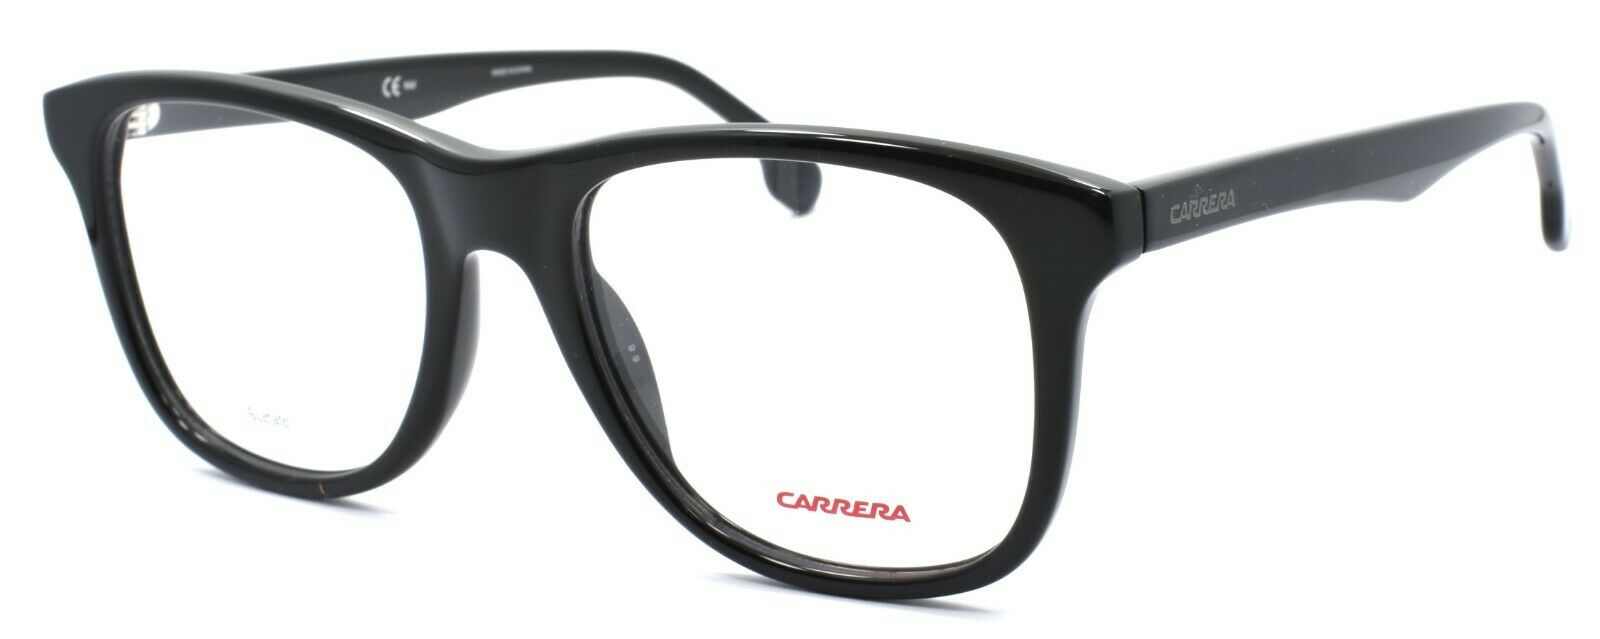 1-Carrera 135/V 807 Men's Eyeglasses Frames 52-19-145 Black + CASE-762753597250-IKSpecs